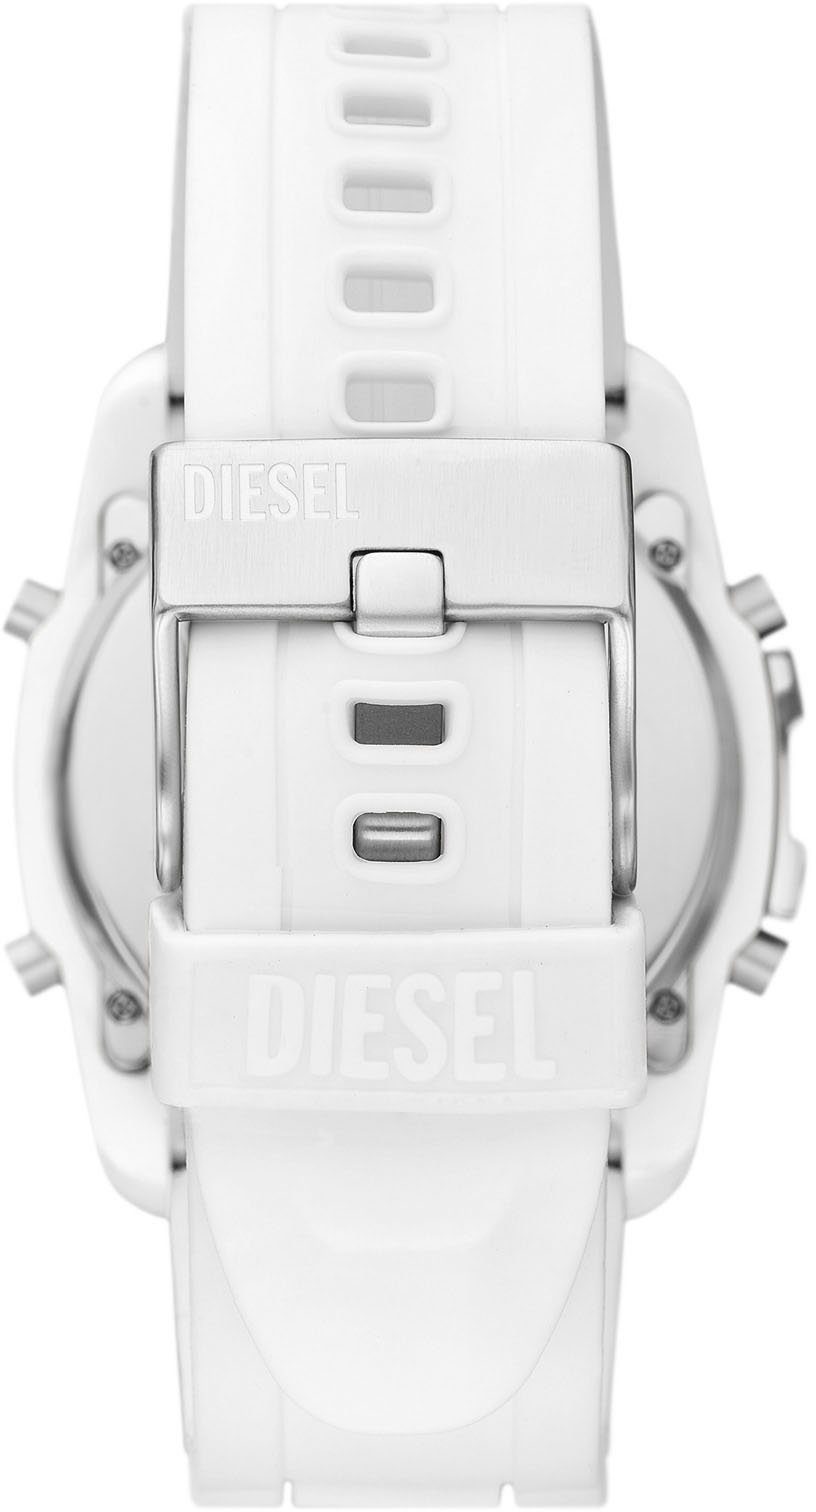 Digitaluhr Diesel MASTER CHIEF, DZ2157